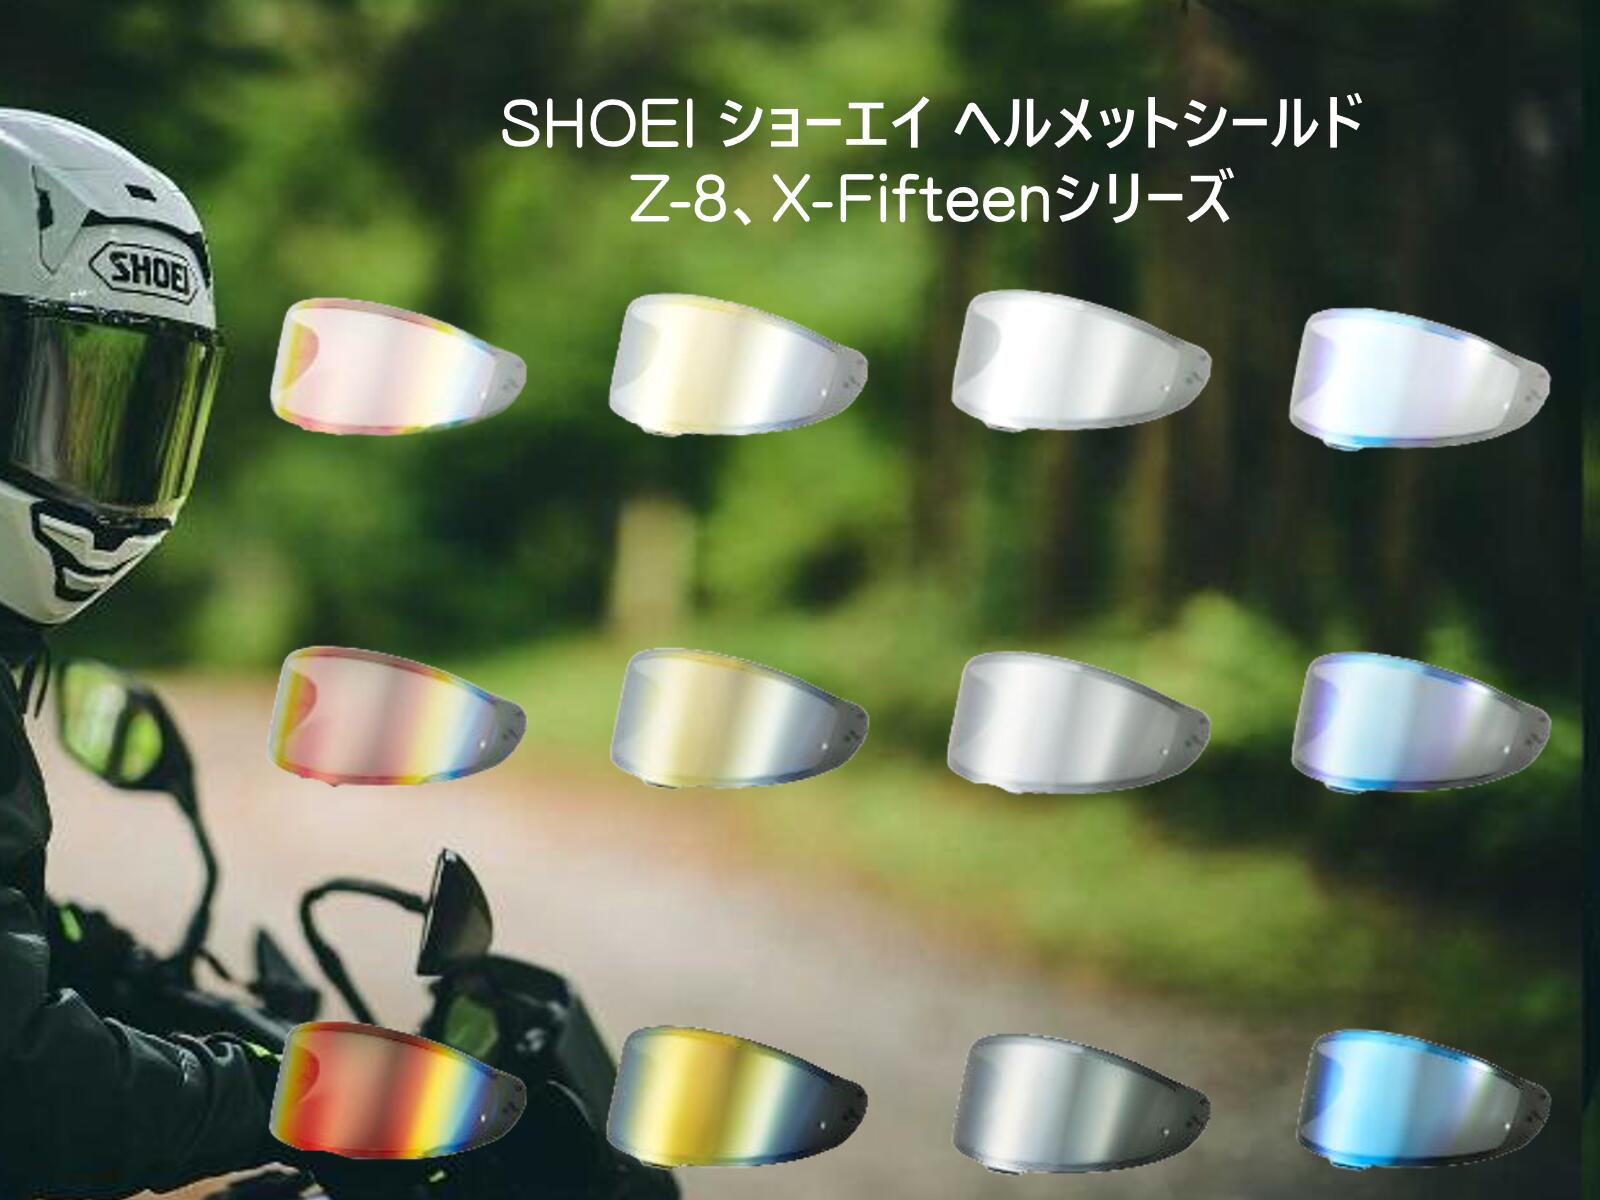 在庫有り 当日発送 YAMASHIRO 山城 EXTRA CWR-F2 バイク ヘルメット SHOEI ショーエイ Z-8 X-Fifteen ヘルメット シールド フルフェイス cwr-f2